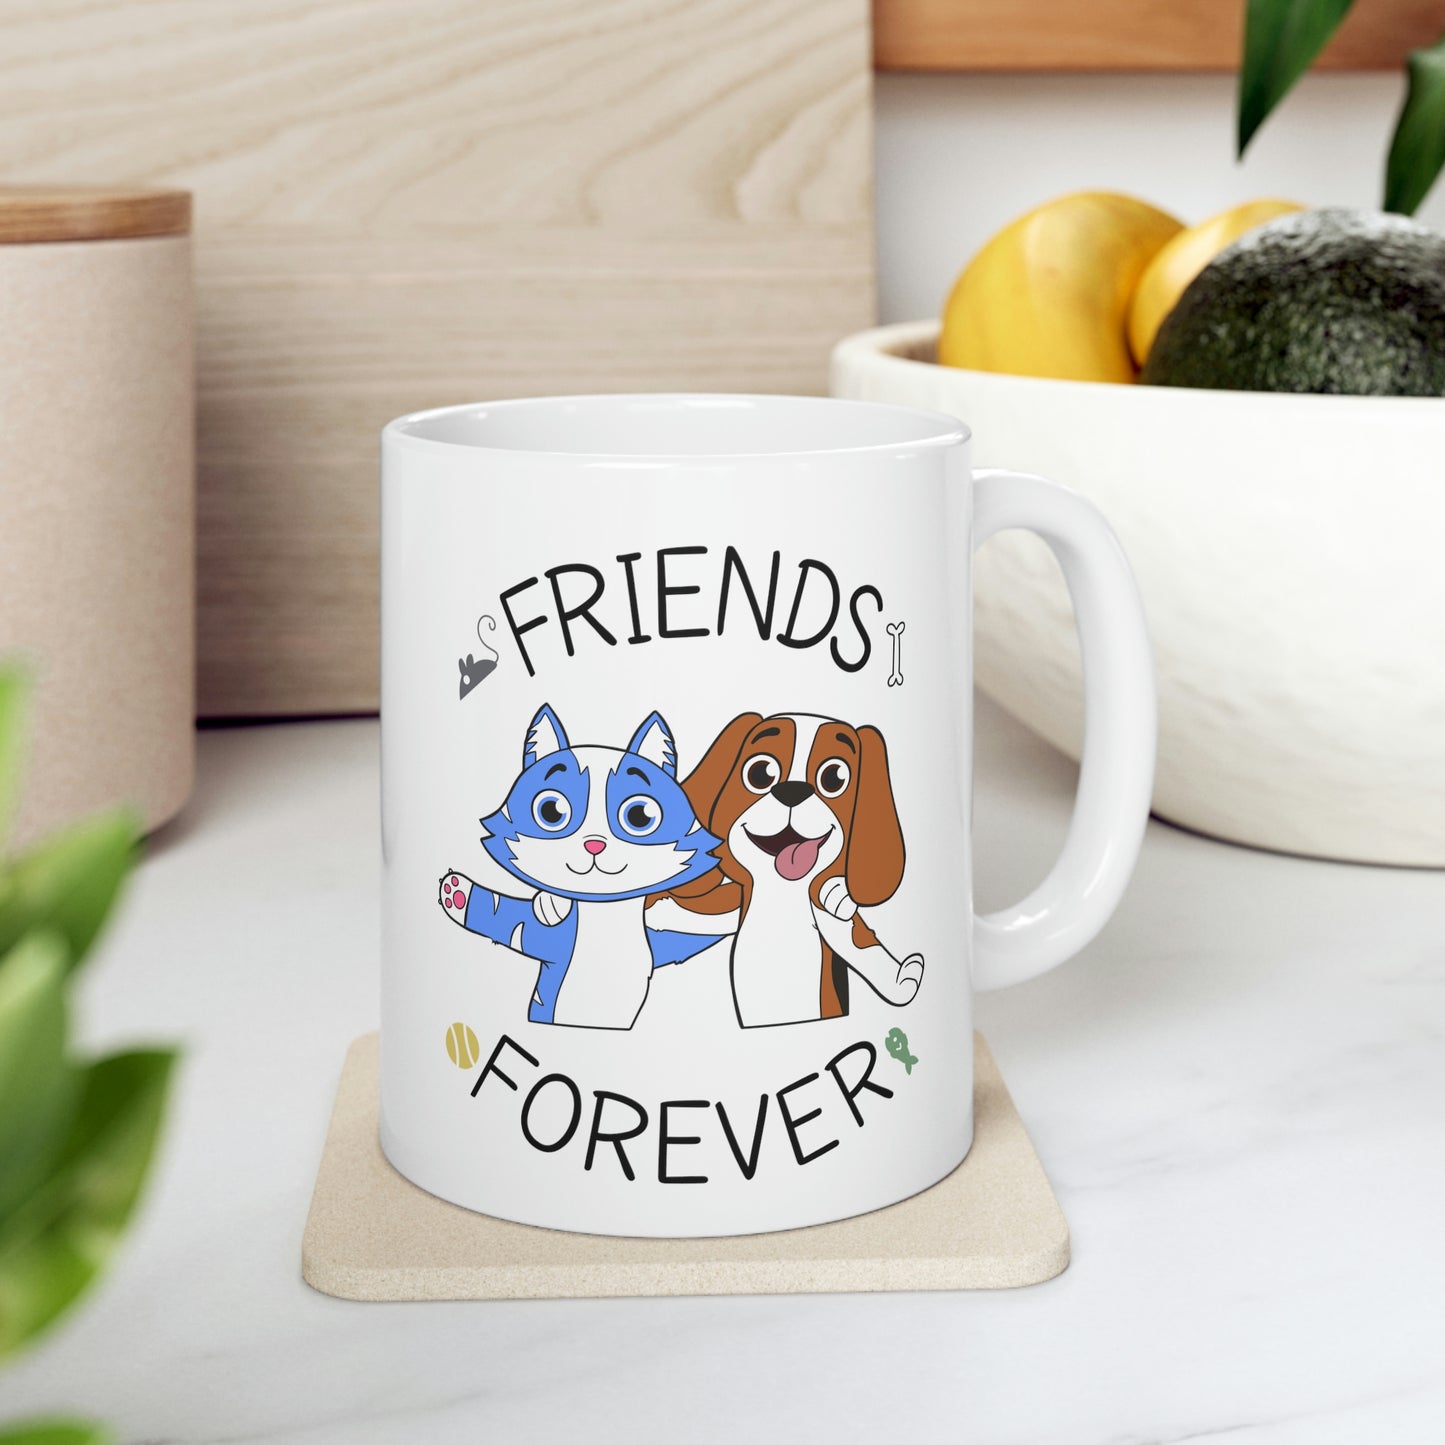 Friends Forever Ceramic Mug 11oz